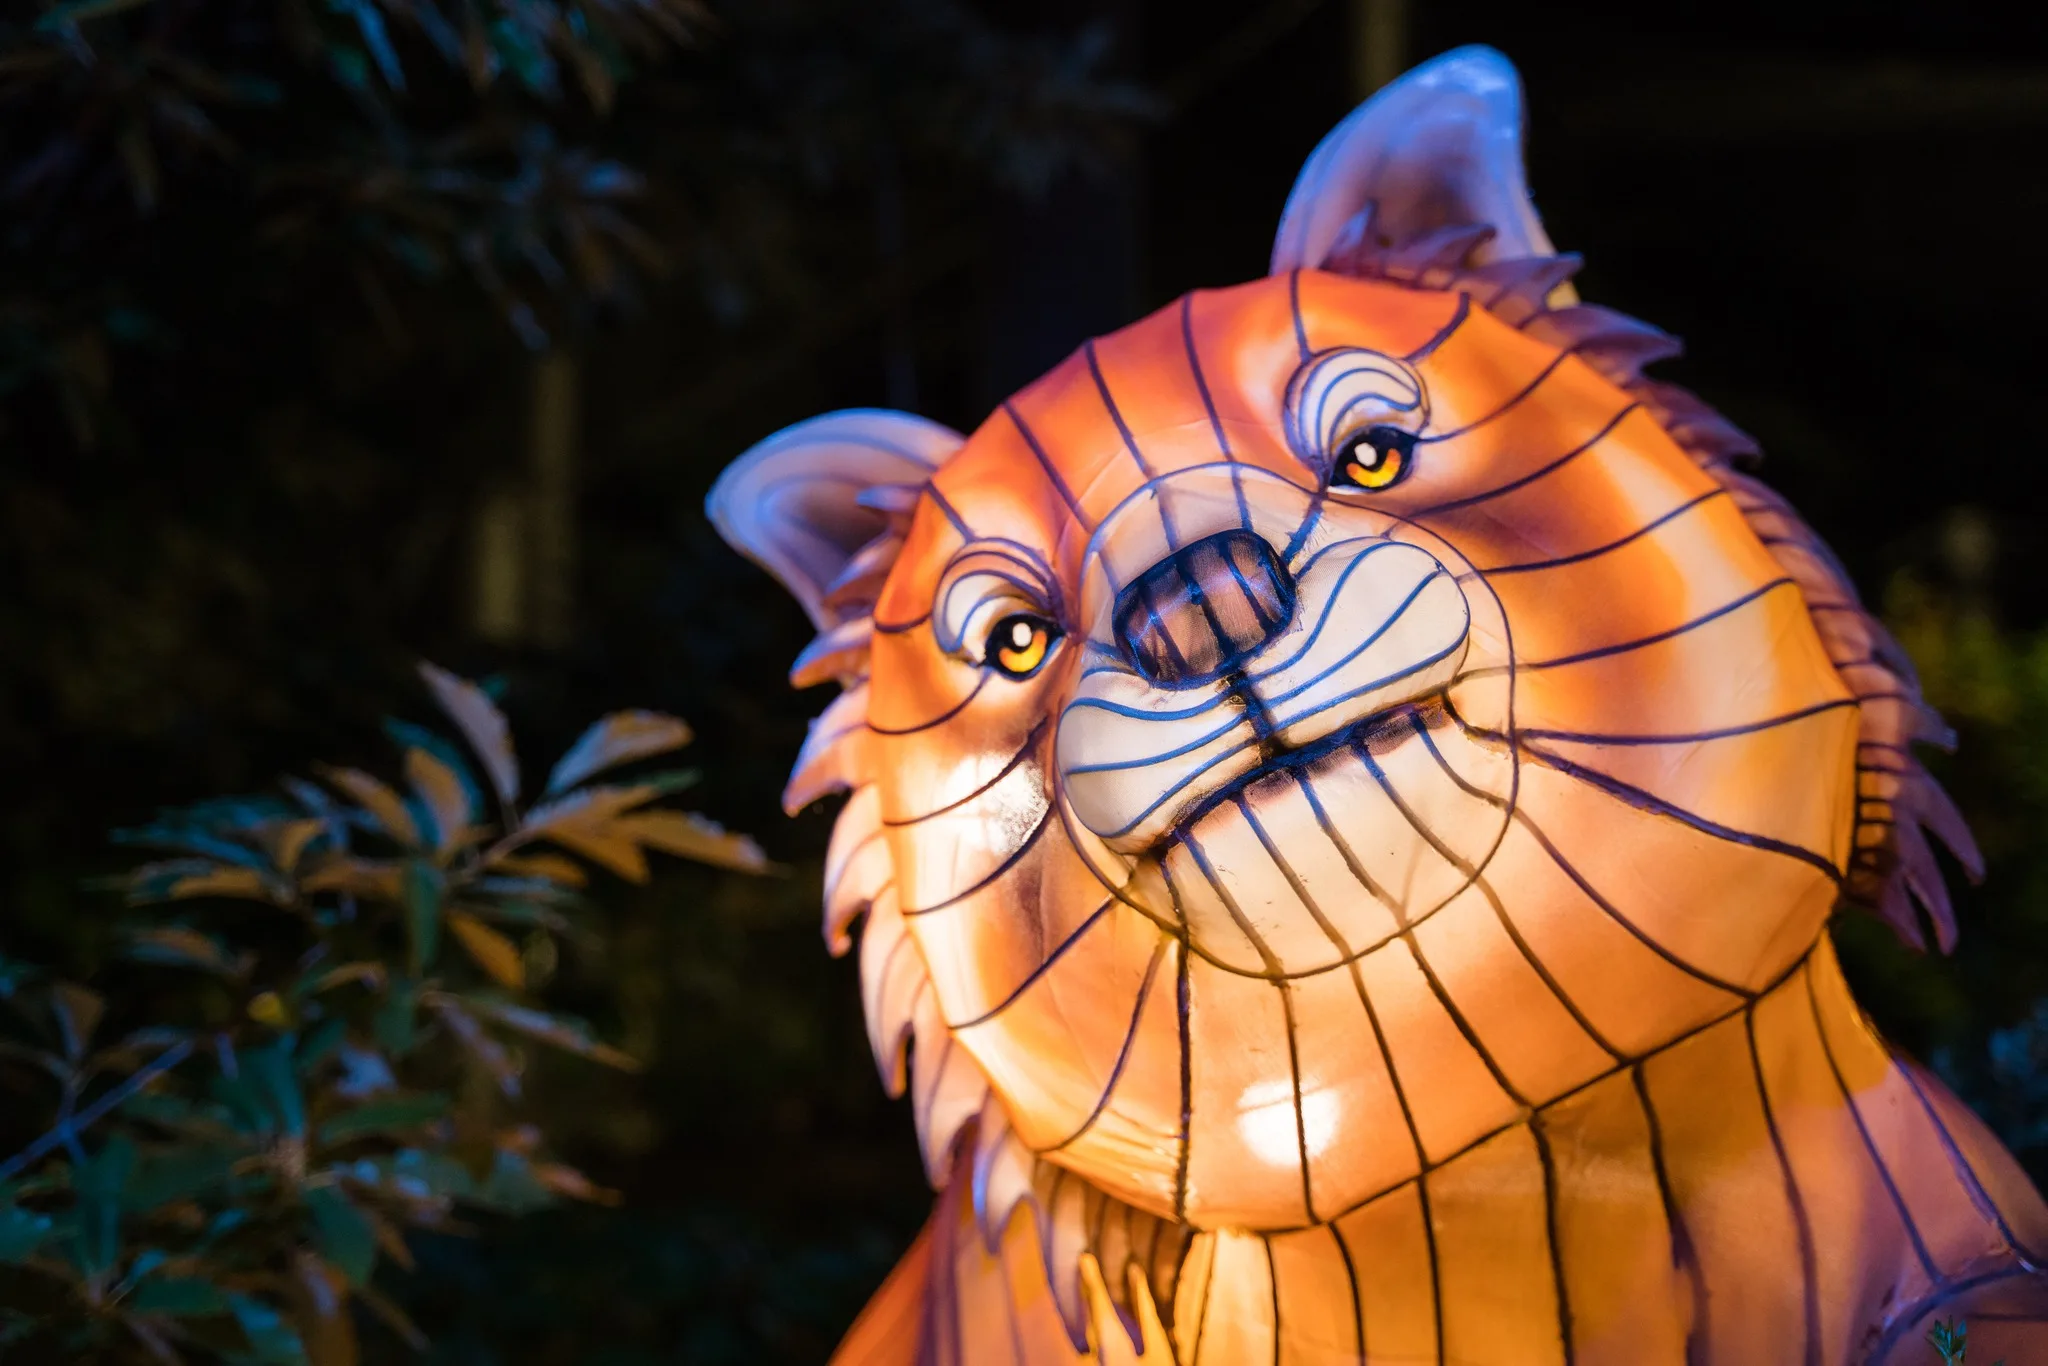 A red panda lantern at WildLanterns